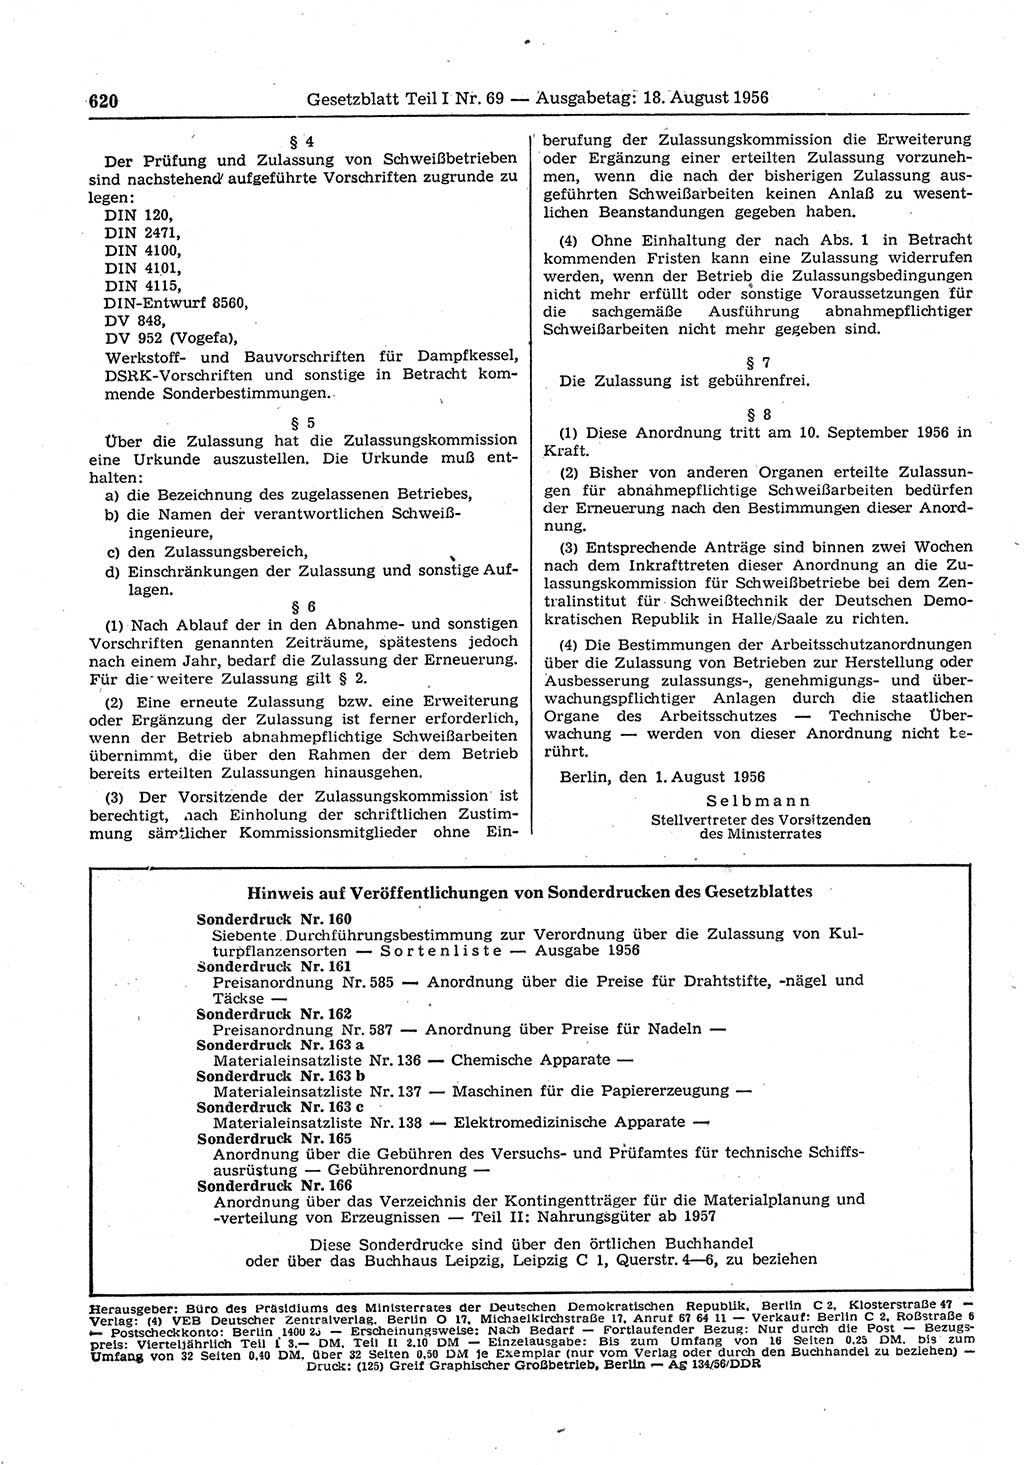 Gesetzblatt (GBl.) der Deutschen Demokratischen Republik (DDR) Teil Ⅰ 1956, Seite 620 (GBl. DDR Ⅰ 1956, S. 620)